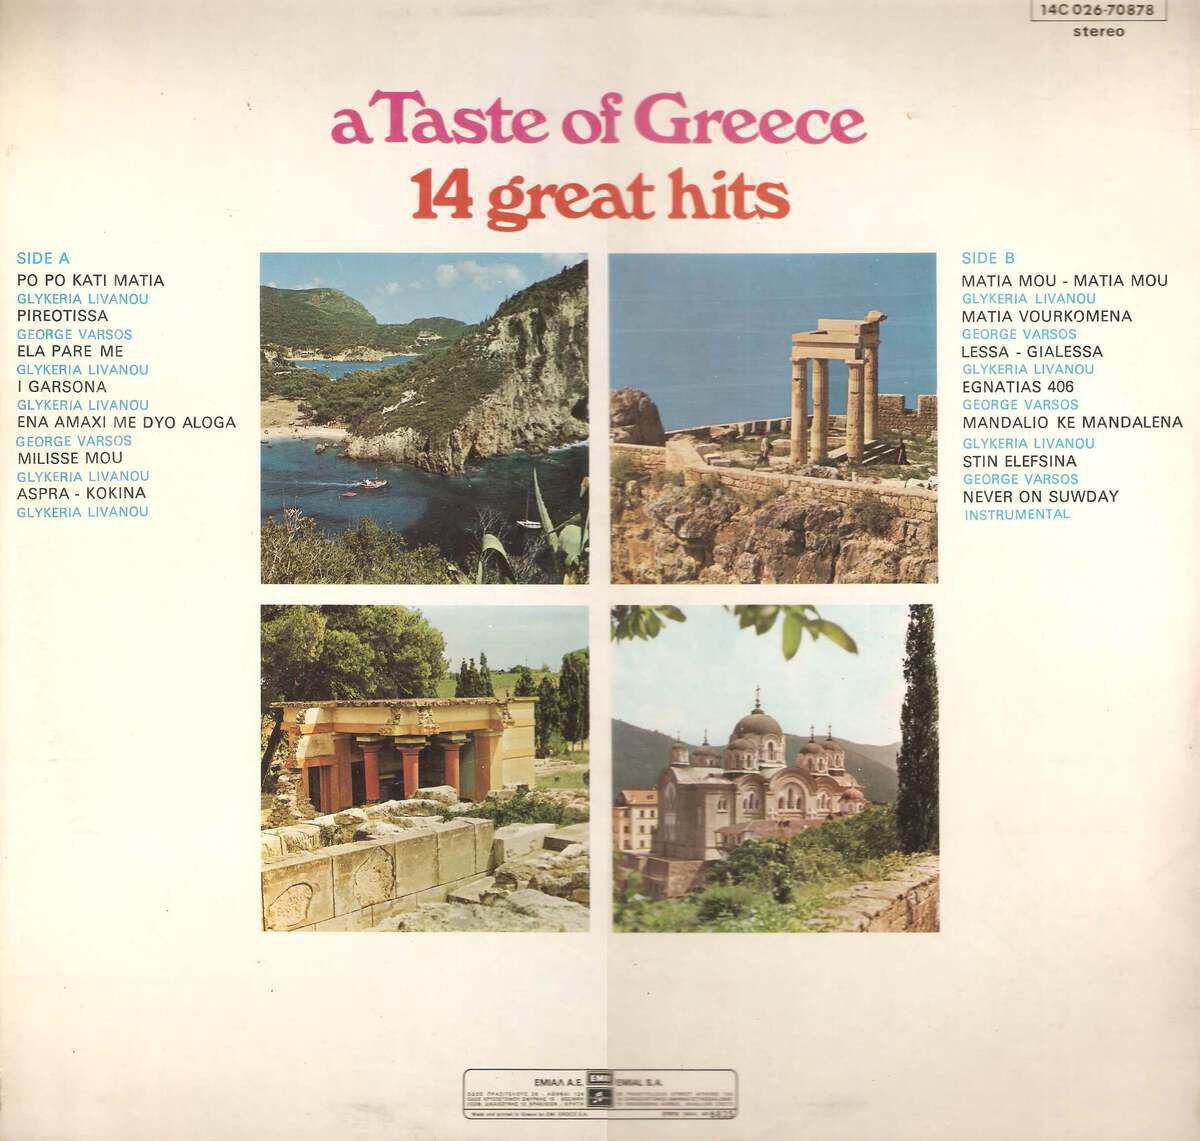 2.A taste of Greece